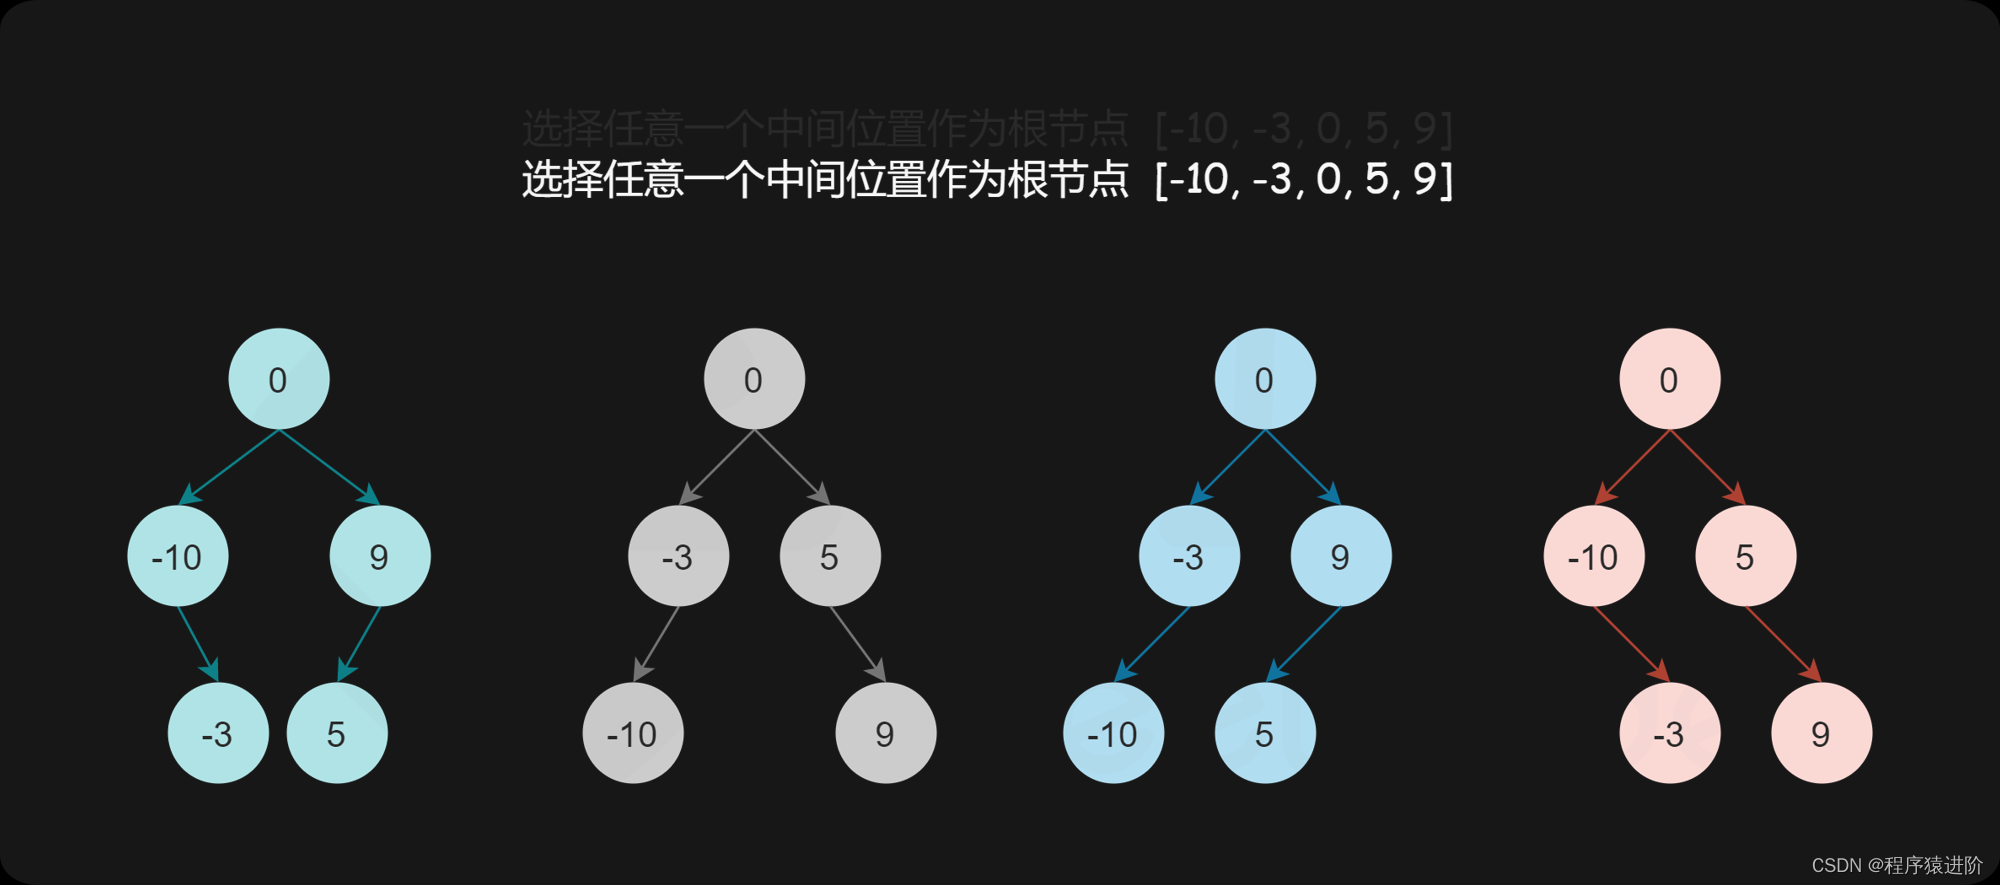 将有序数组转换为二叉搜索树[简单]